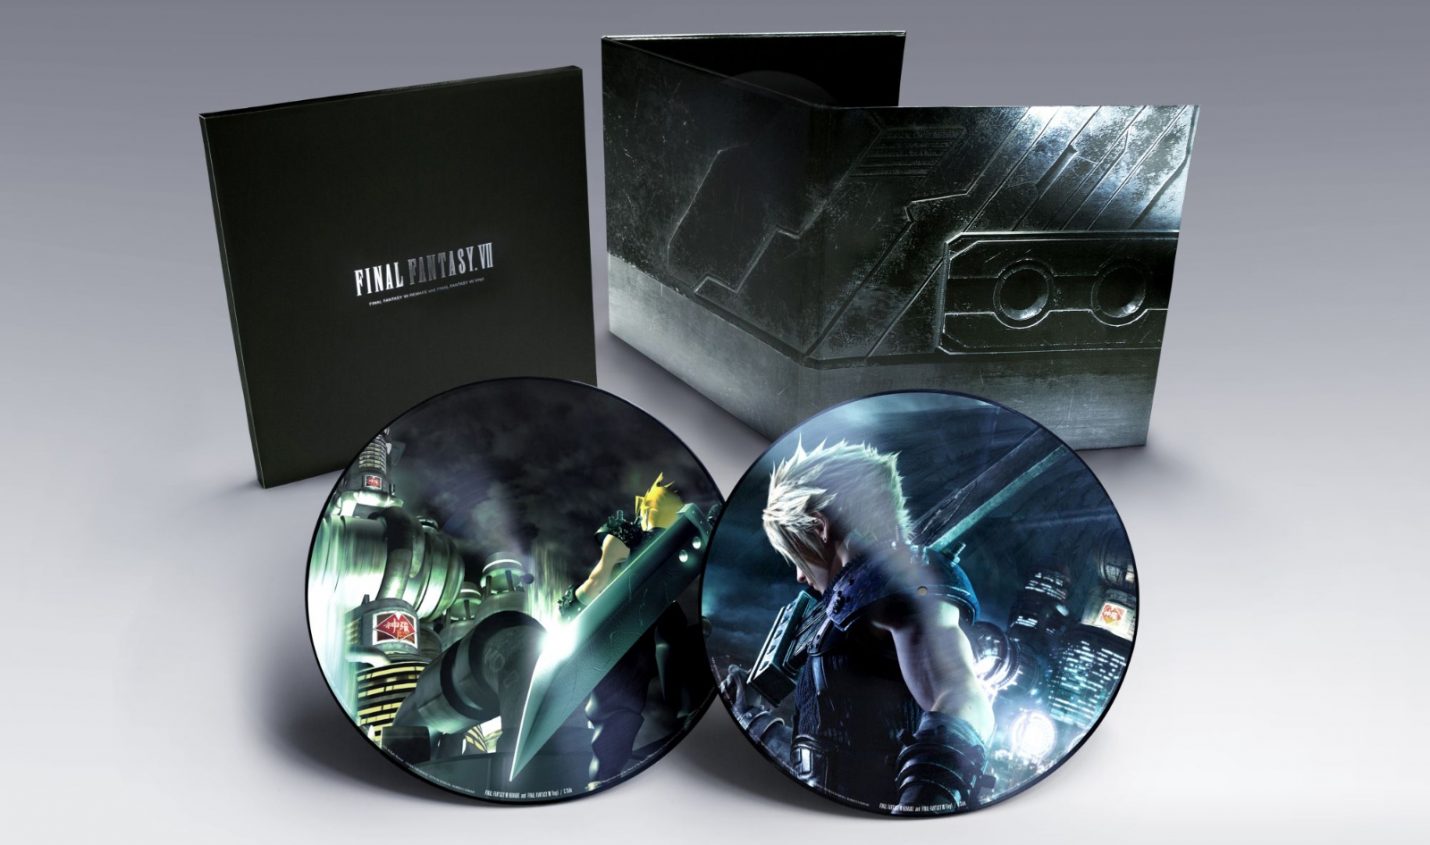 Erscheint auf Vinyl: Der Soundtrack von Final Fantasy VII